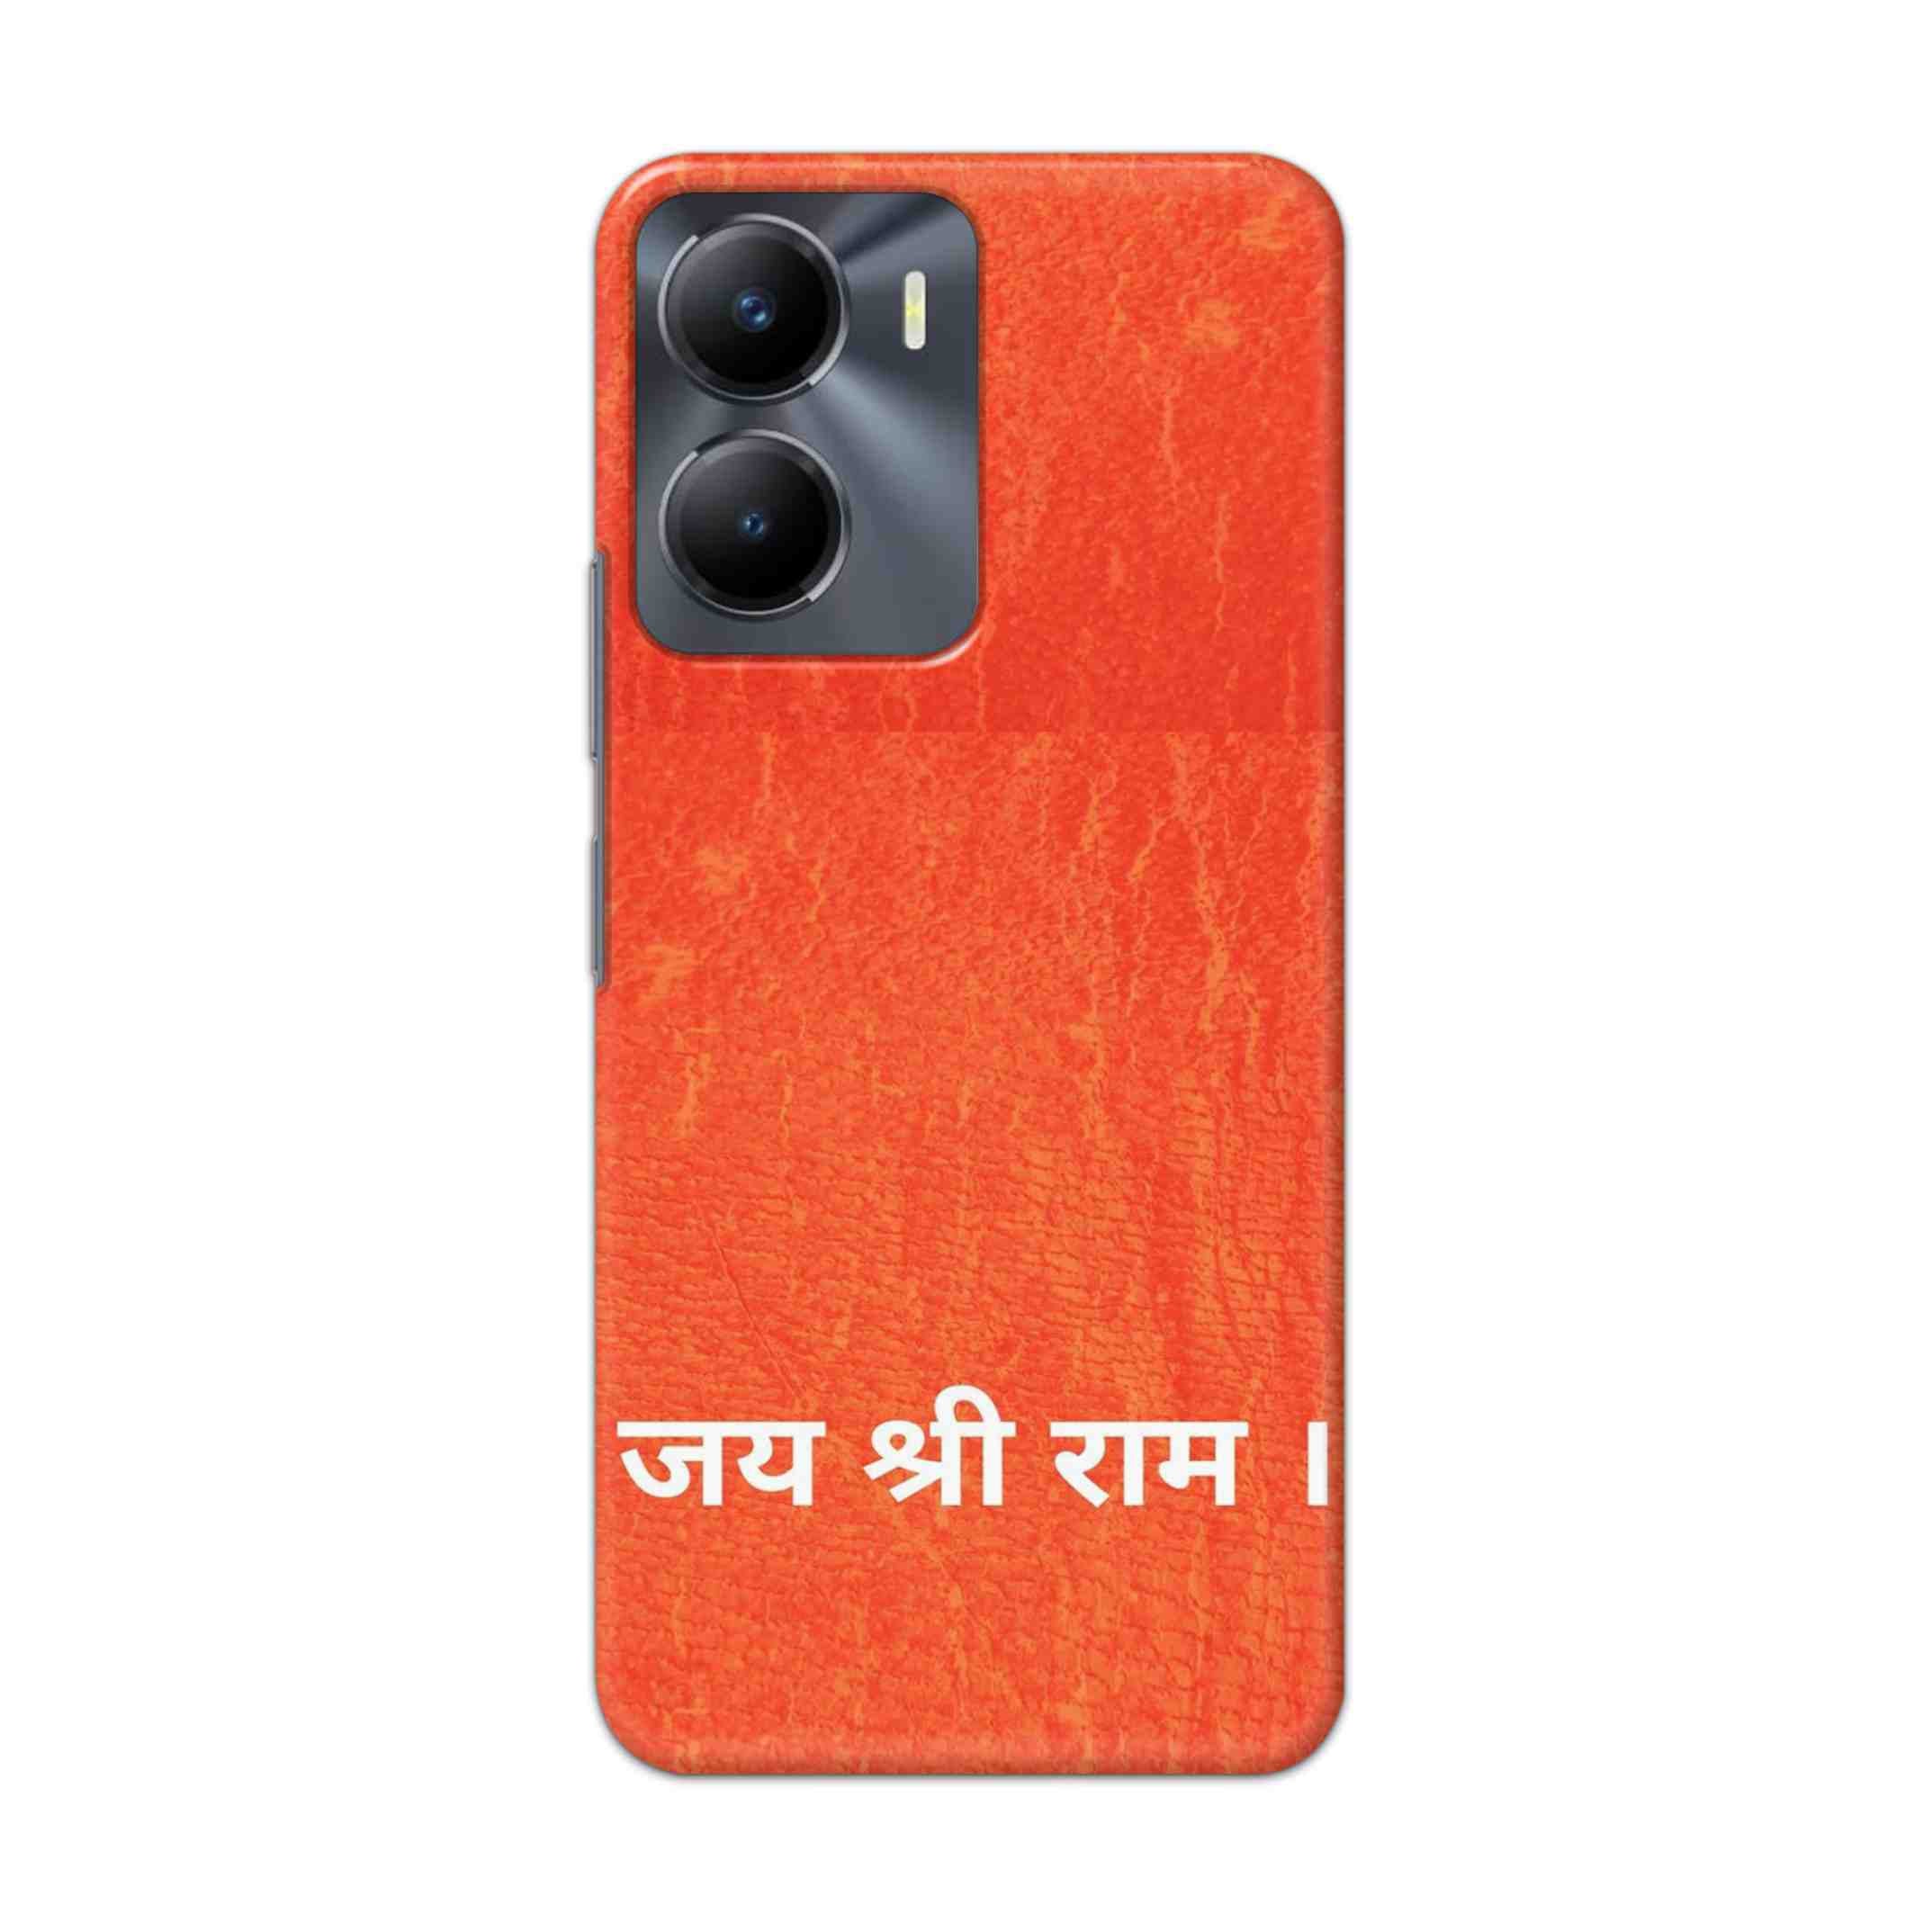 Buy Jai Shree Ram Hard Back Mobile Phone Case Cover For Vivo Y56 Online